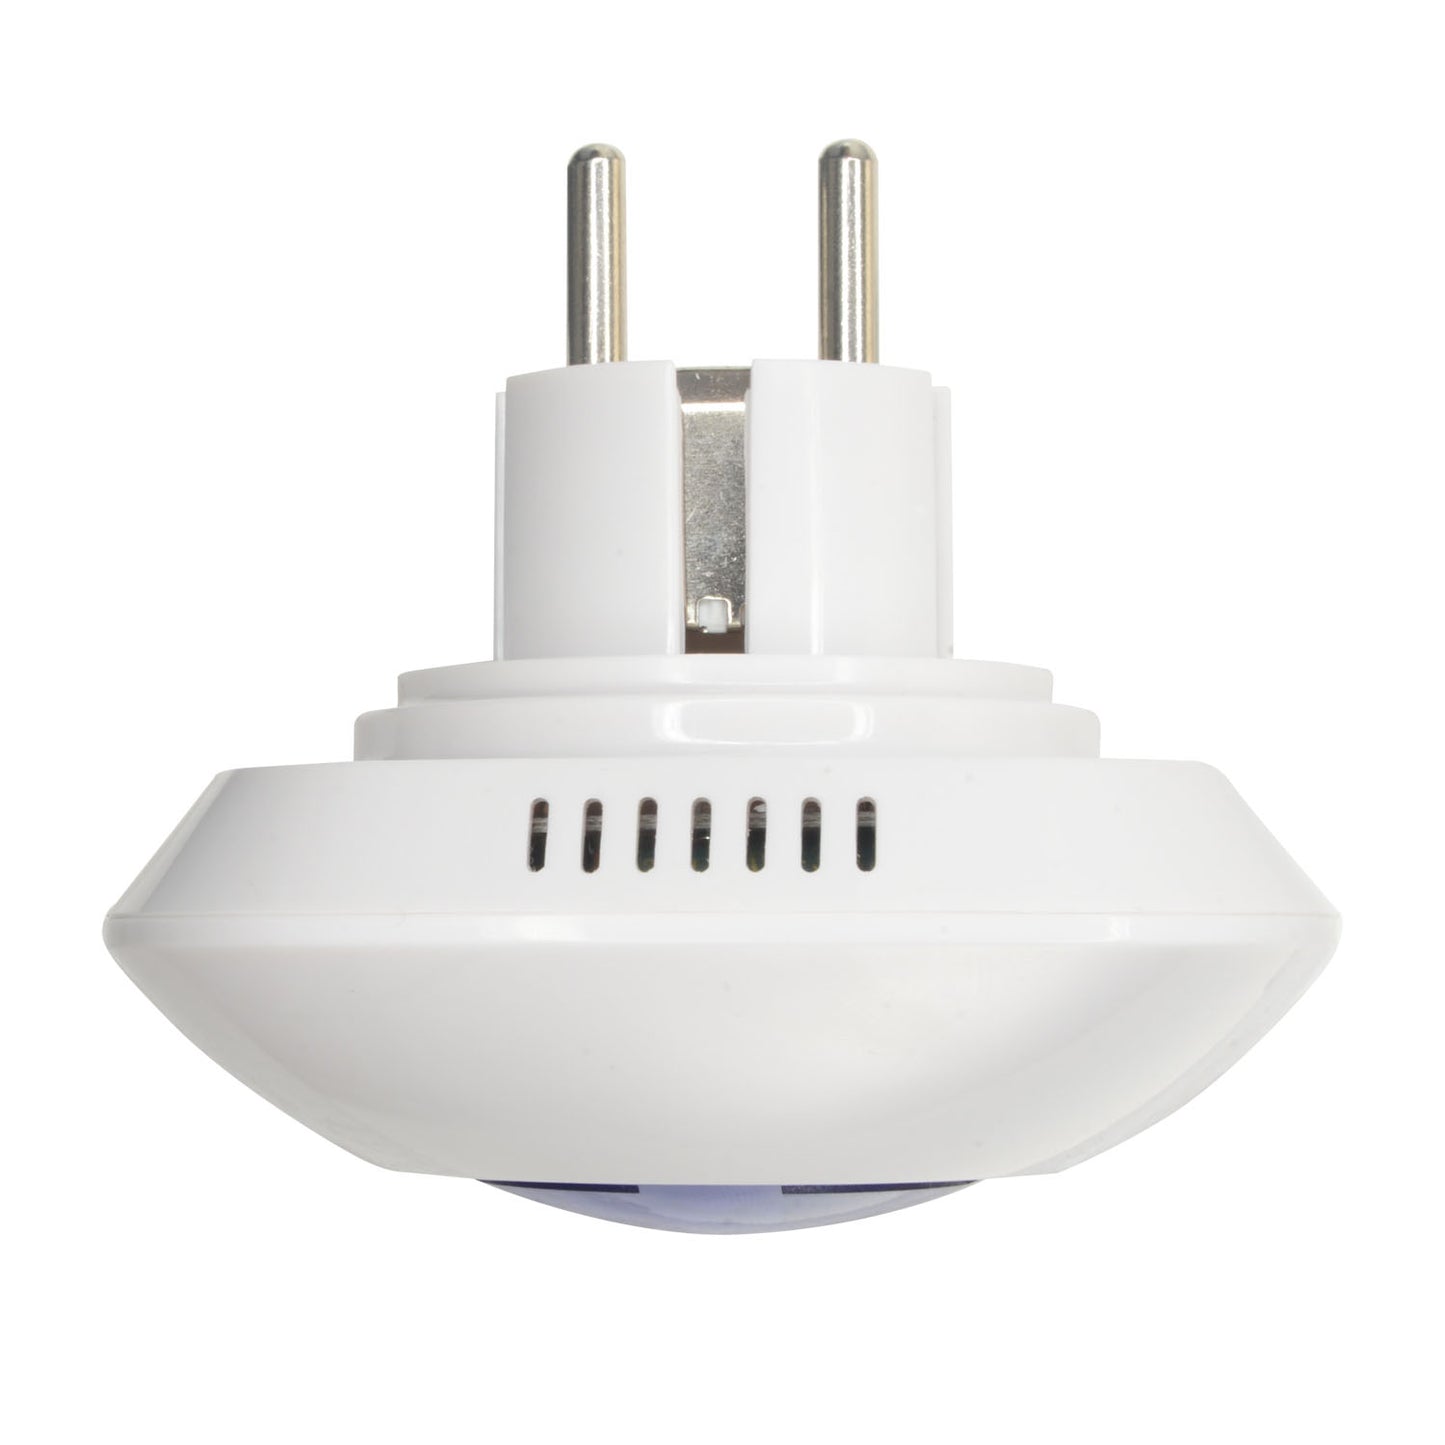 Sirena per interni - Wireless - Antenna interna - Potenza 90 dB e lampeggiante - Uso interno - Connessione diretta Plug&Play a AC 220 V